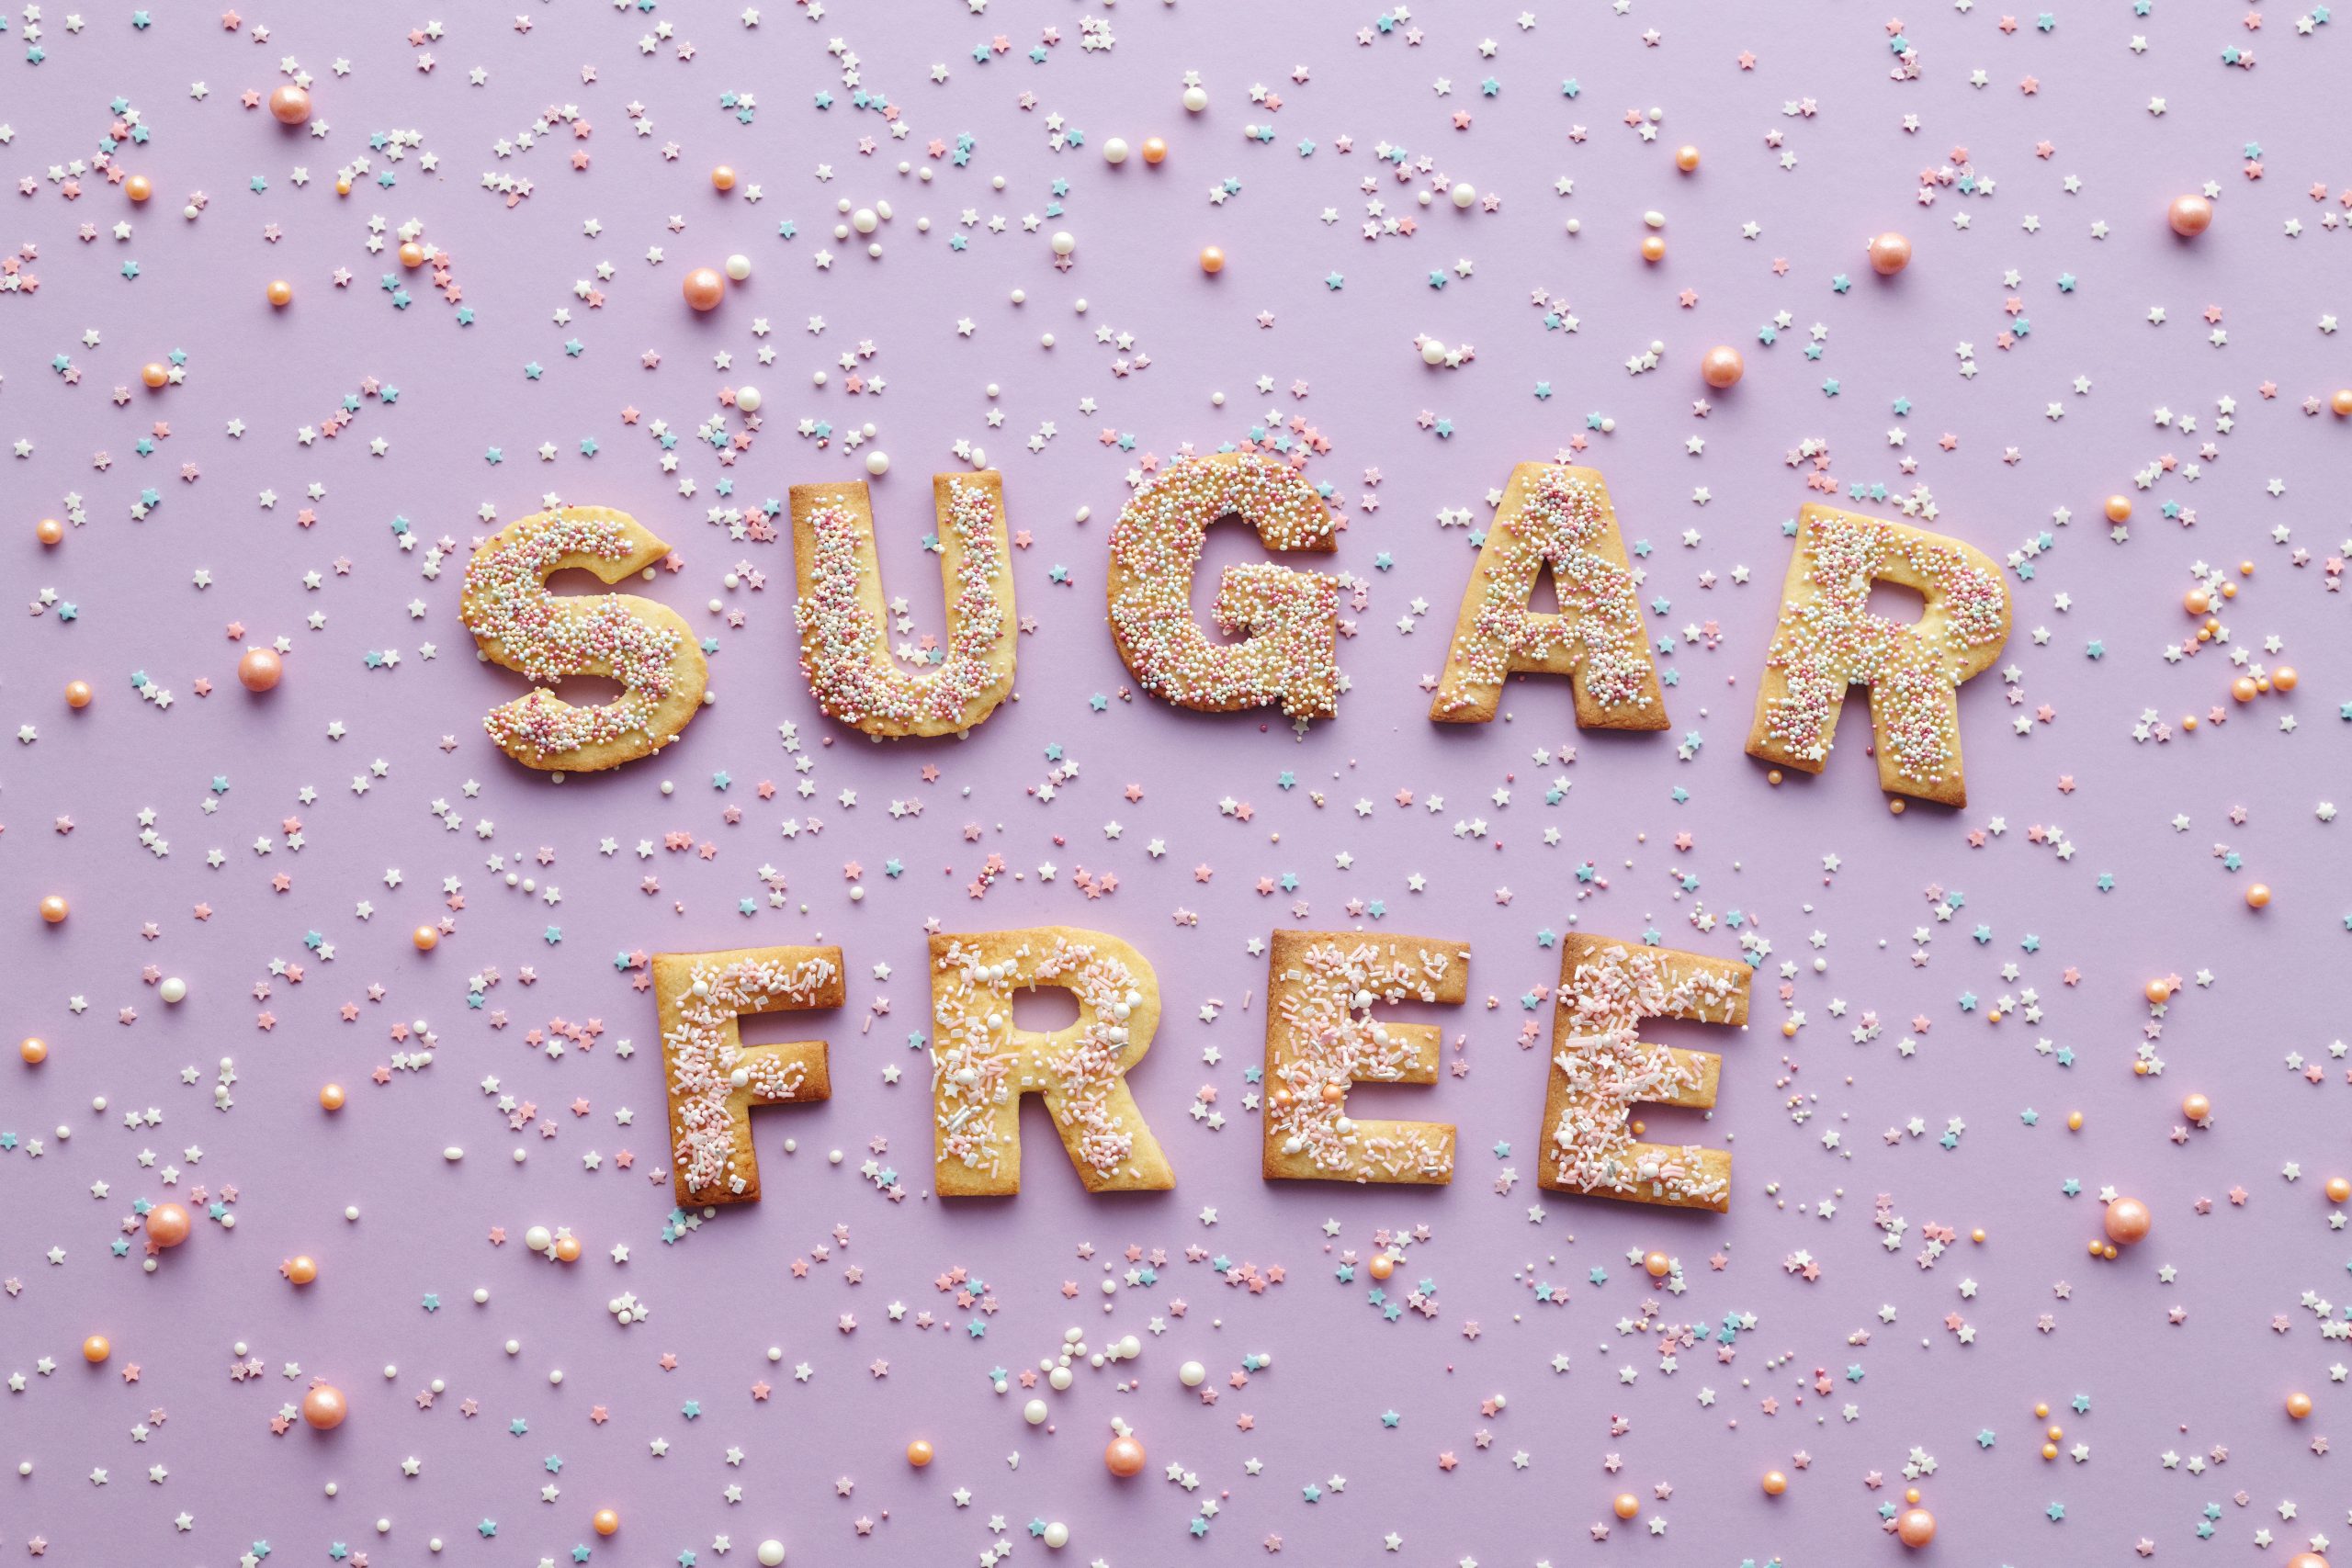 «Нужно избегать любого сахара, чтобы похудеть» – миф, который пора развенчать